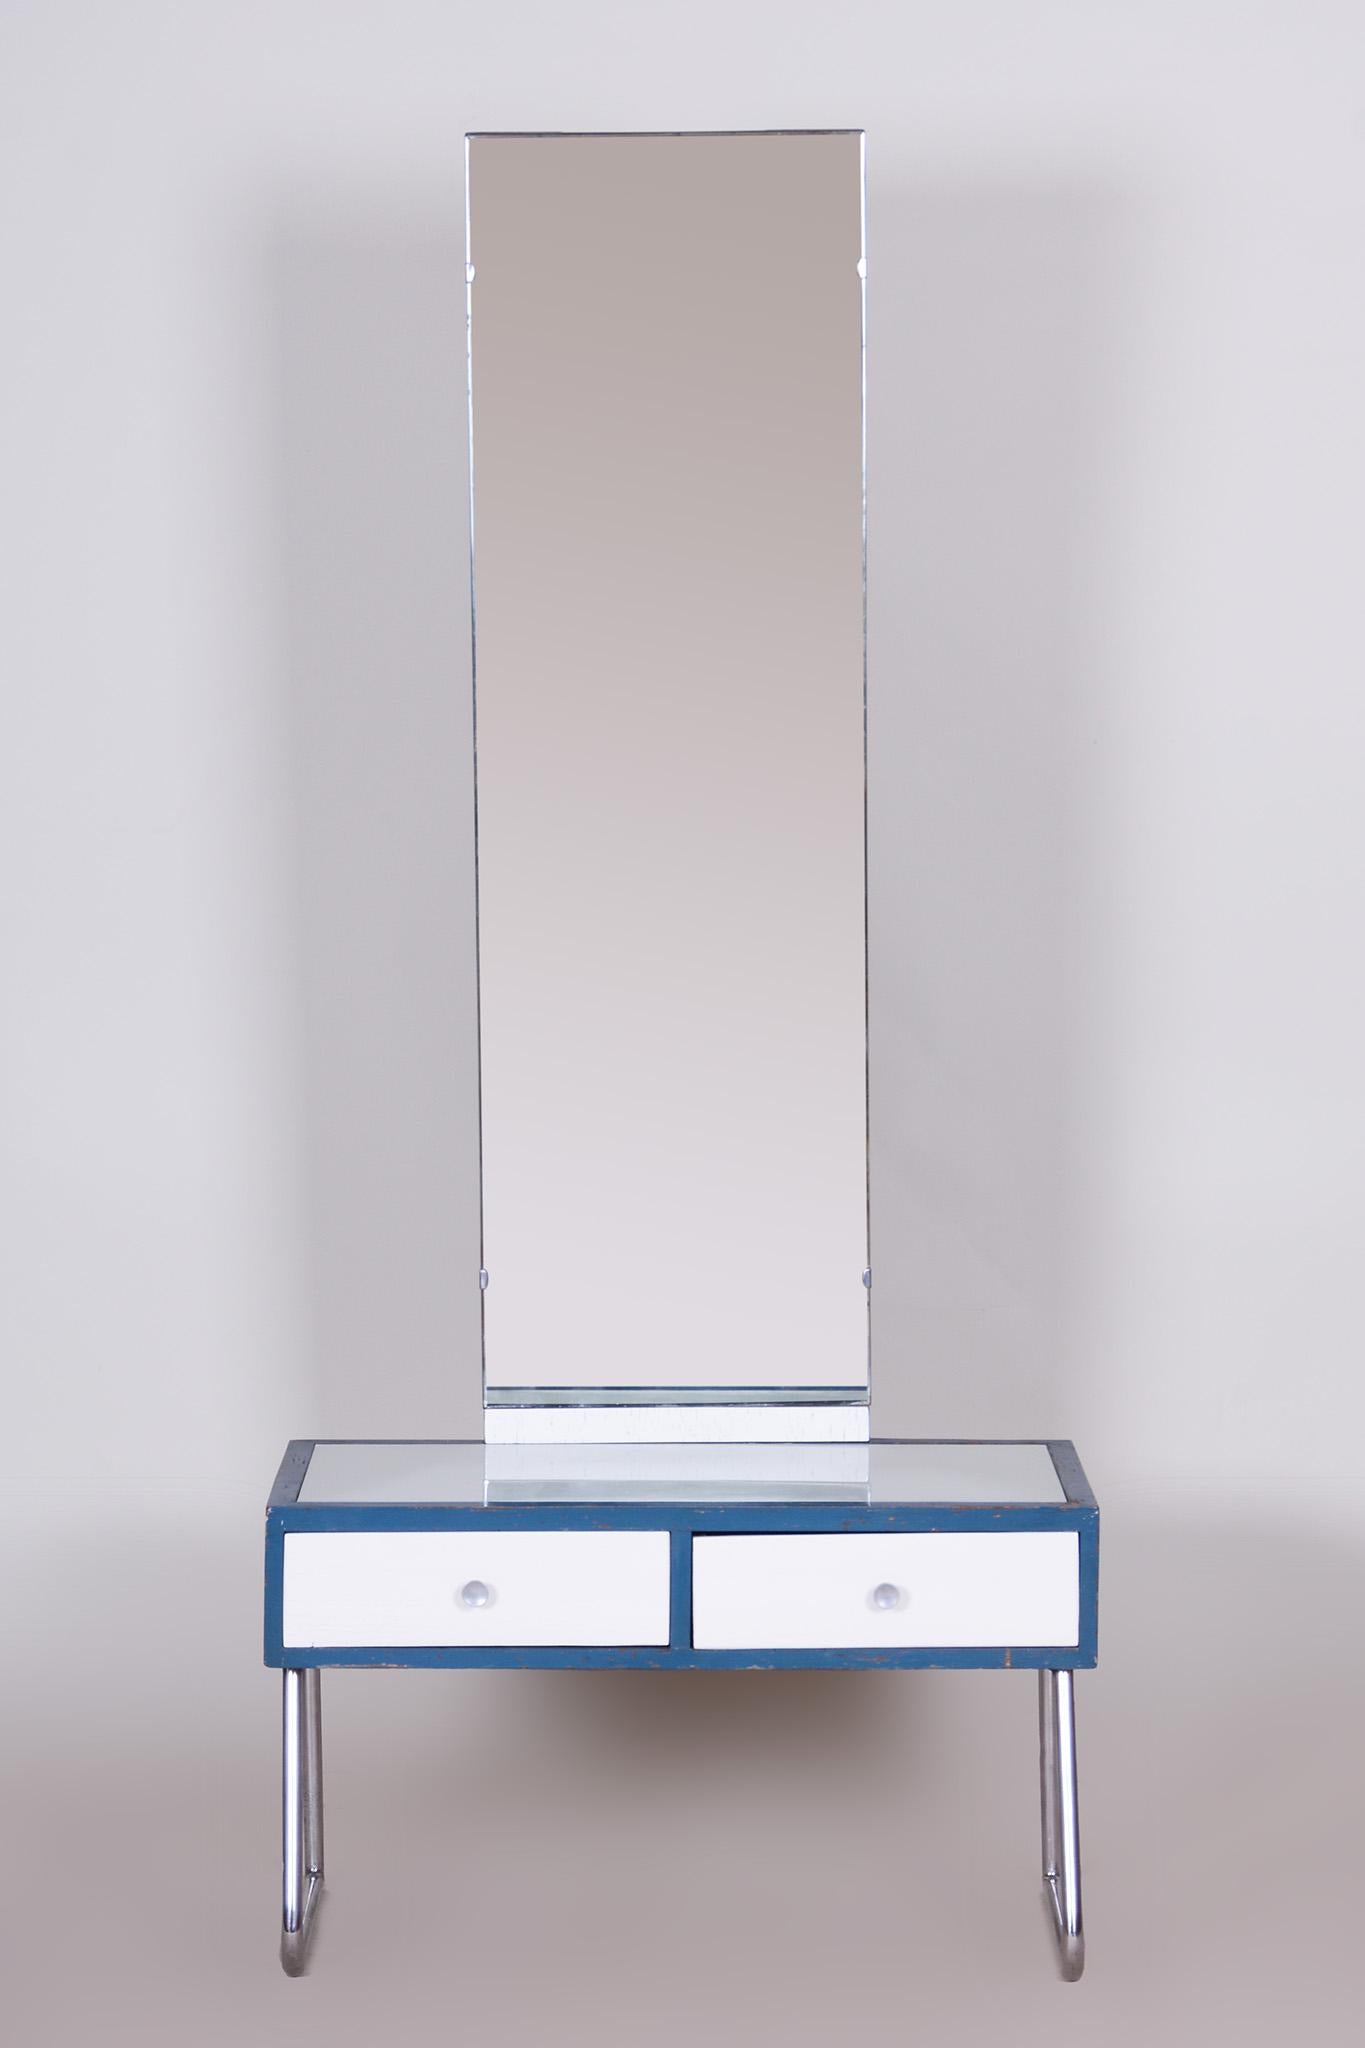 Miroir de toilette Bauhaus en chrome bleu et blanc, fabriqué en République tchèque dans les années 1930.
Le miroir est entièrement d'origine et n'a pas été restauré, il est en parfait état d'origine.
La construction chromée a été nettoyée